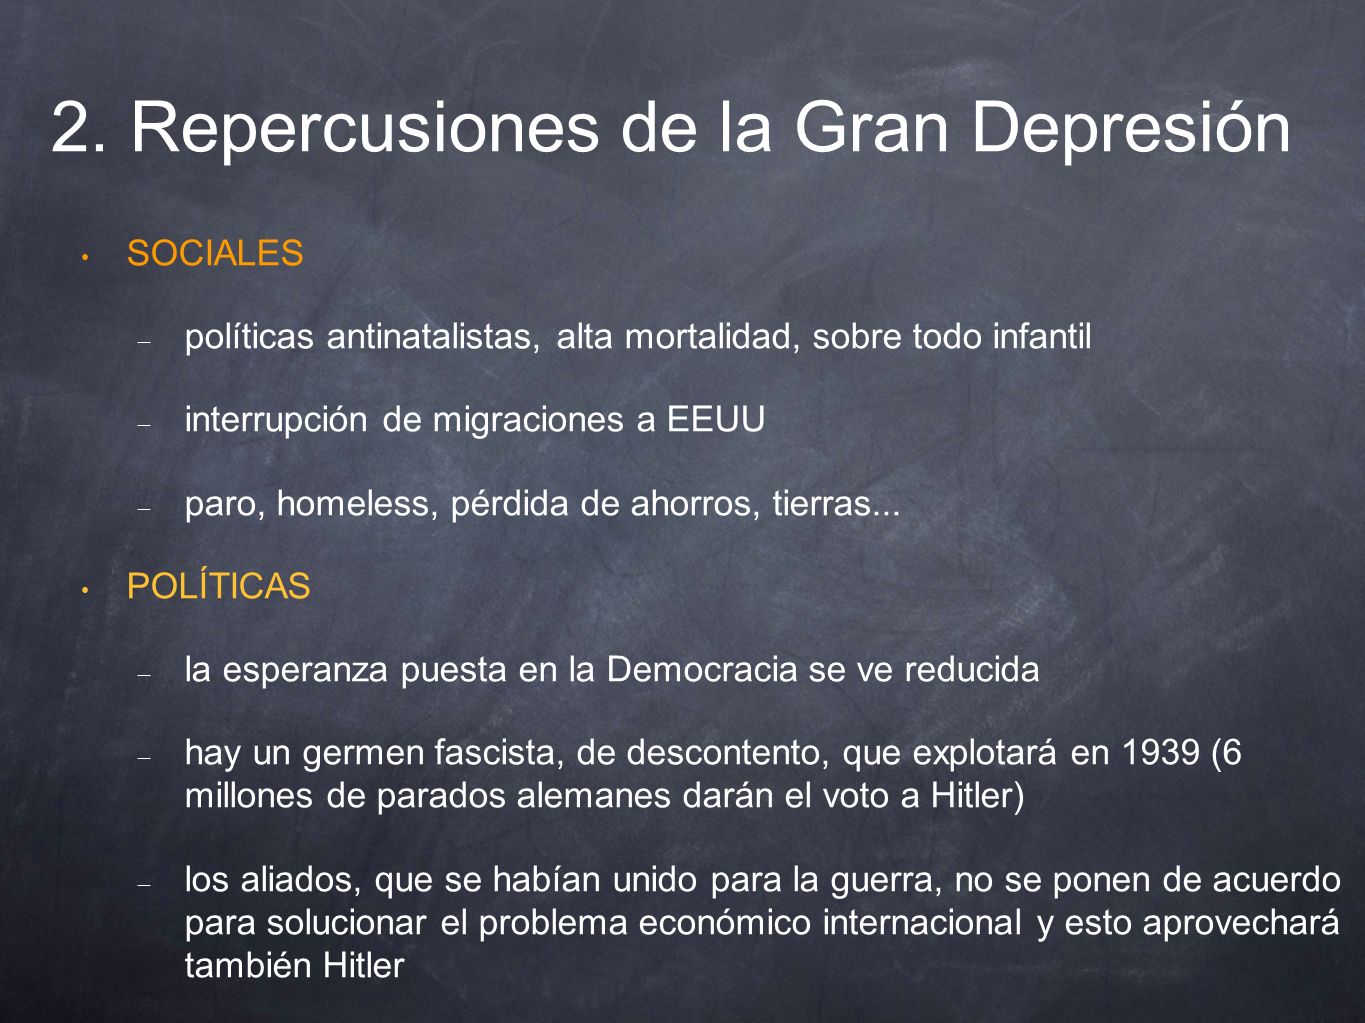 2. Repercusiones de la Gran Depresión